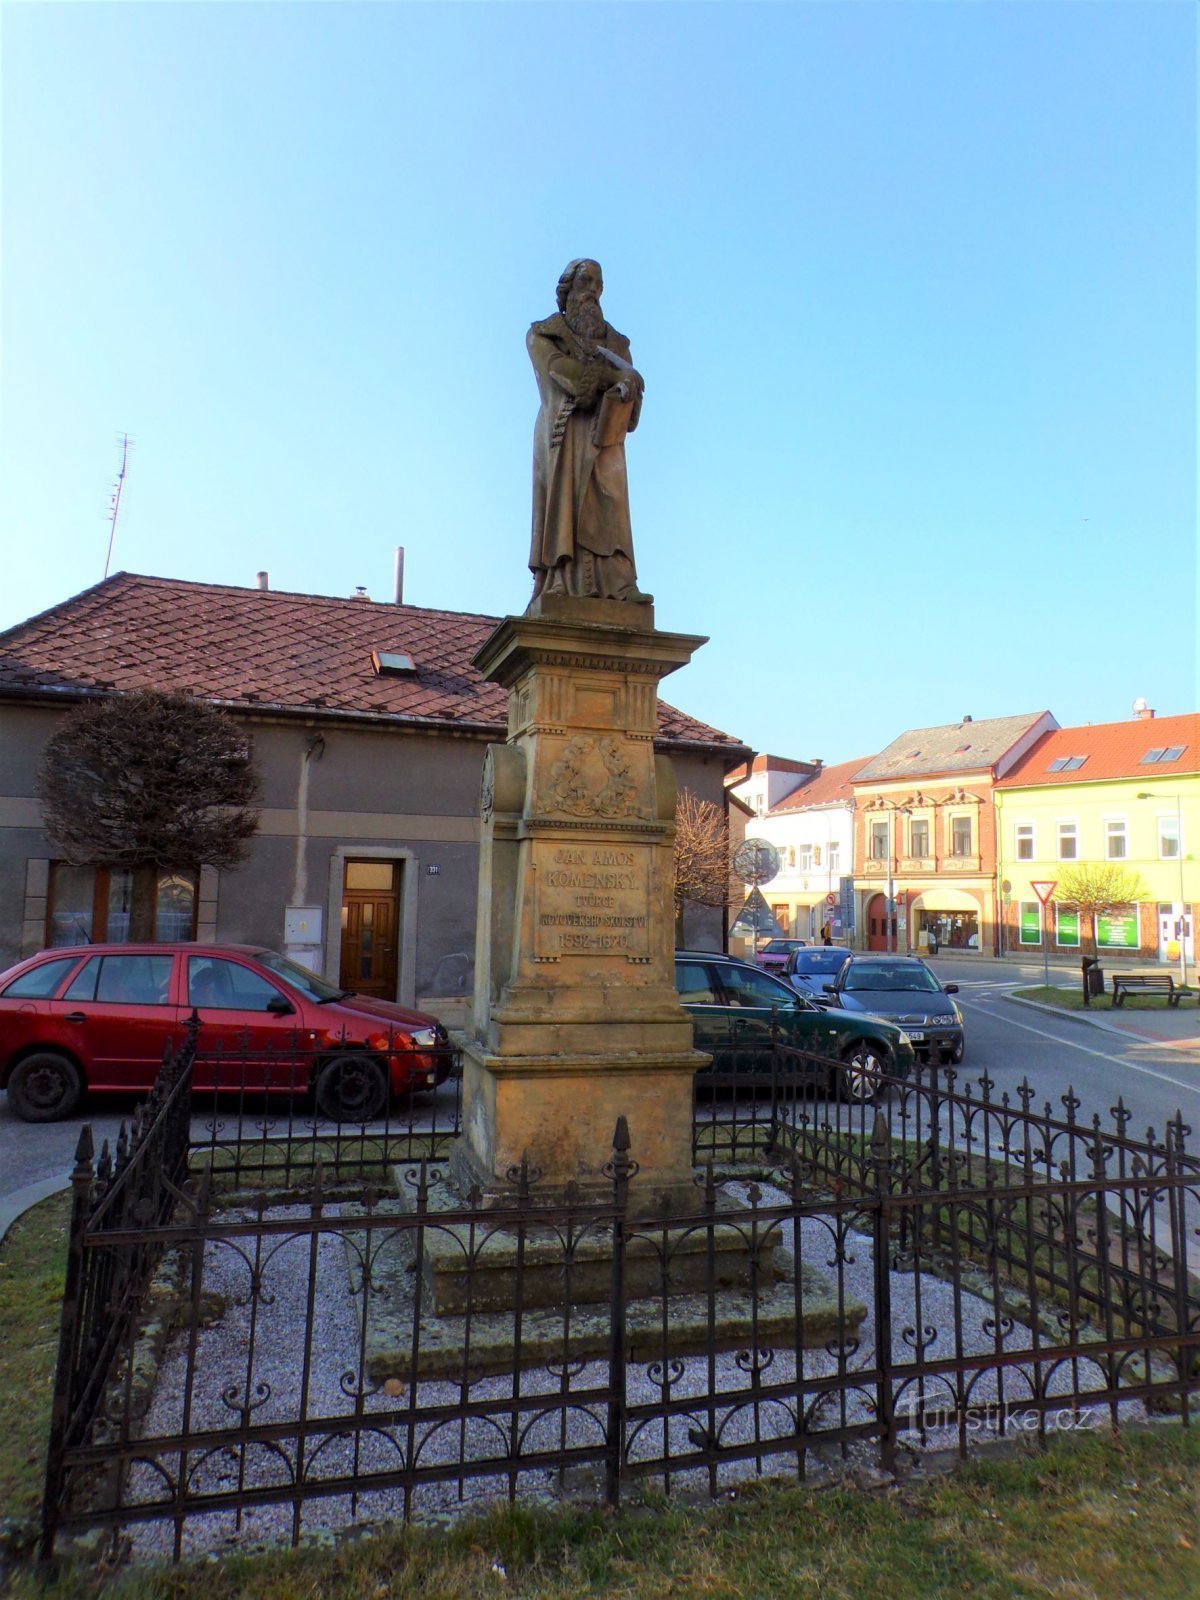 ヤン アモス コメニウスの記念碑 (Hořice, 25.3.2022/XNUMX/XNUMX)